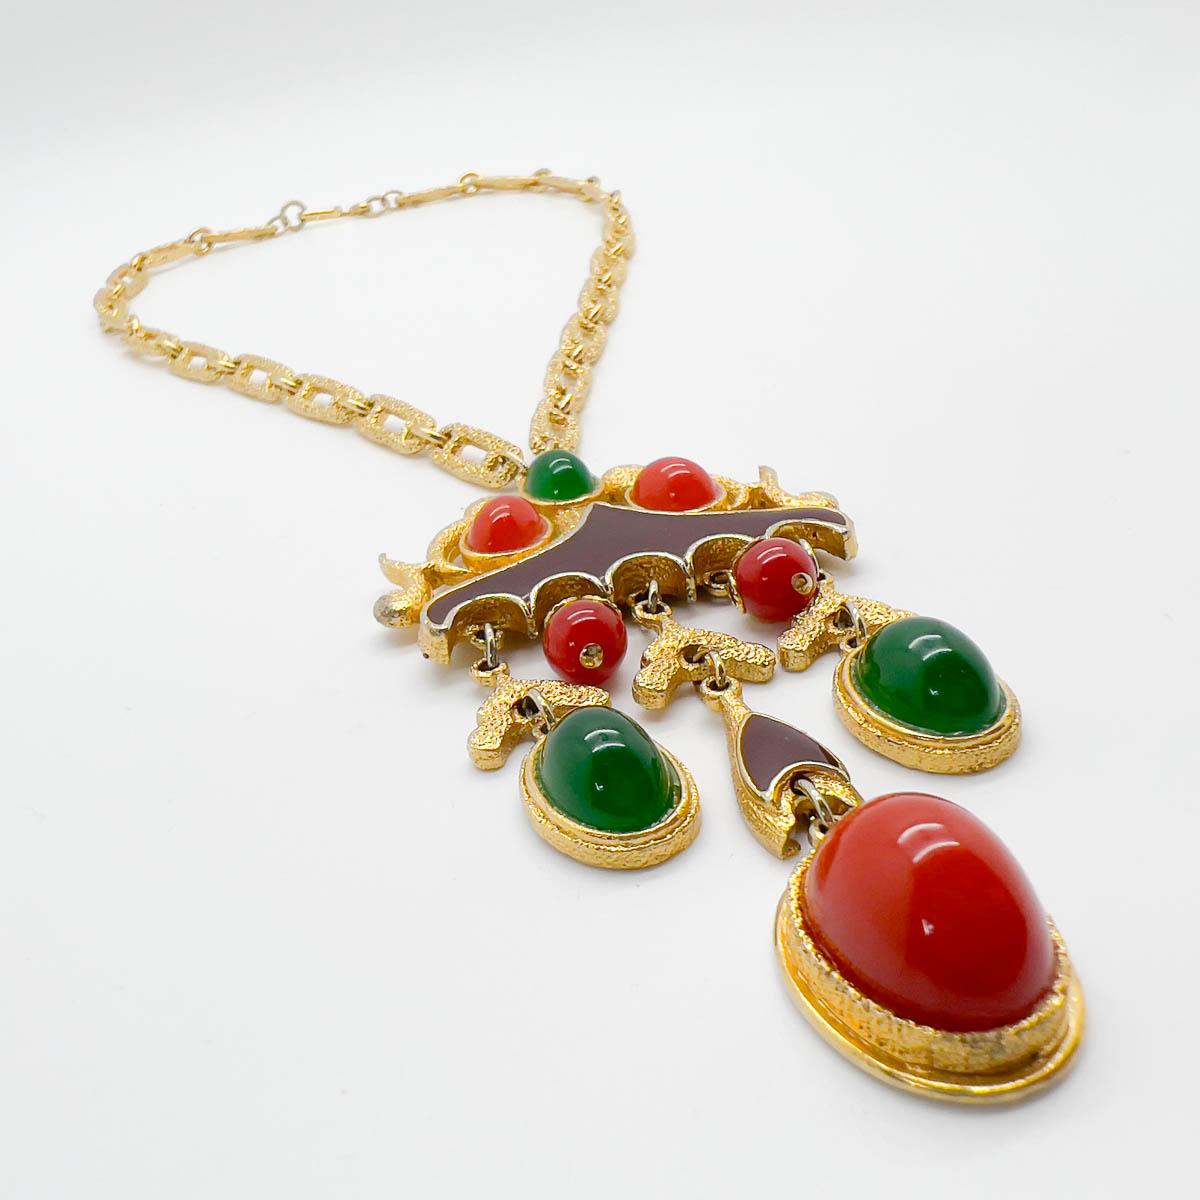 Vintage Tancer & II Asian Inspired Necklace For Sale 1